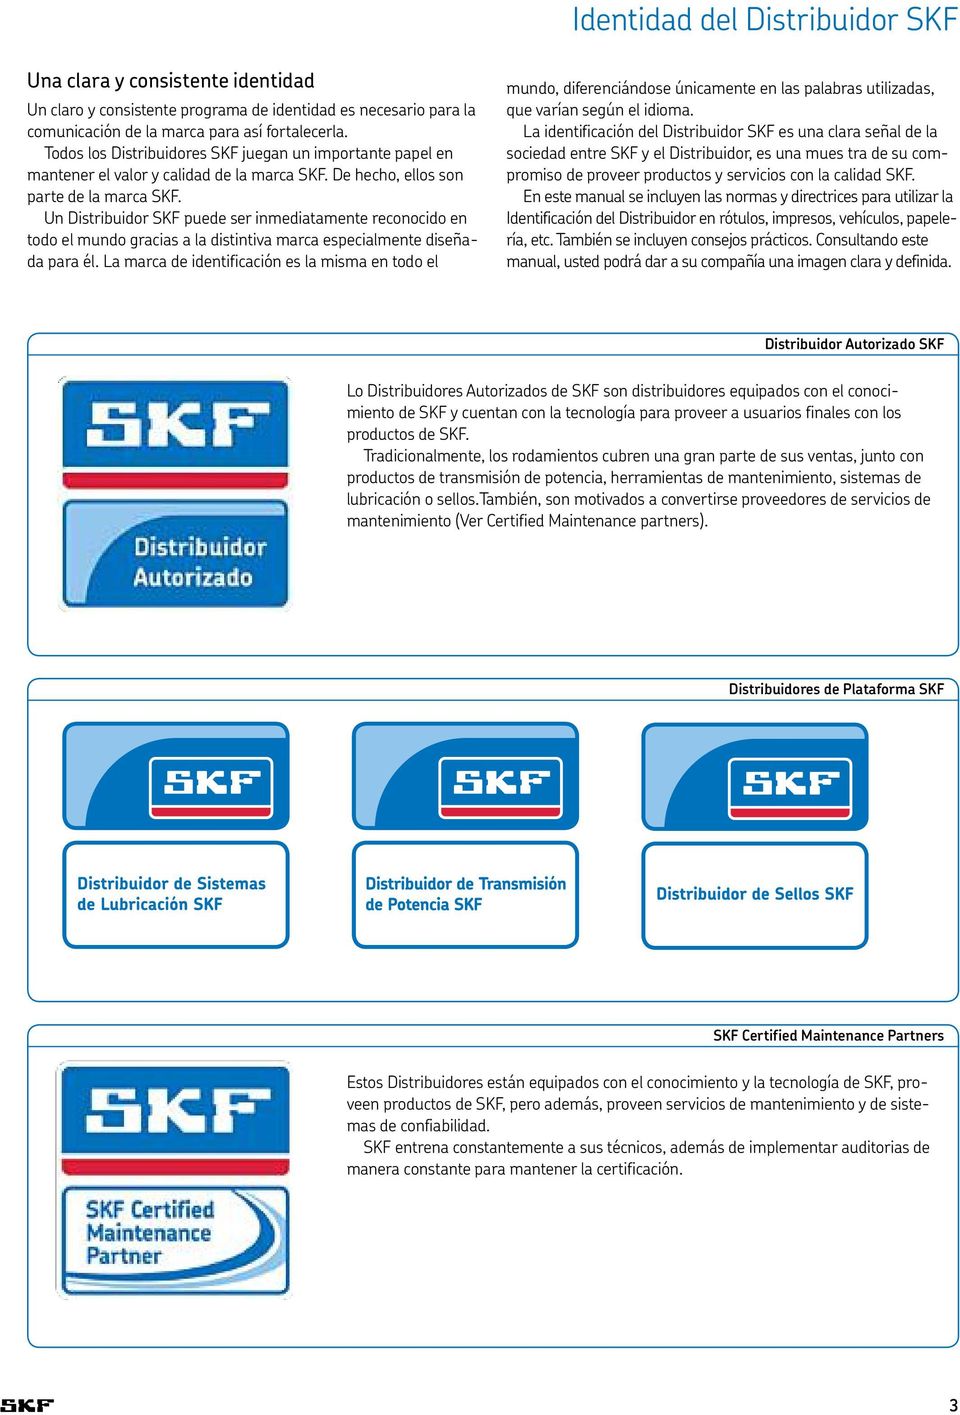 Un Distribuidor SKF puede ser inmediatamente reconocido en todo el mundo gracias a la distintiva marca especialmente diseñada para él.